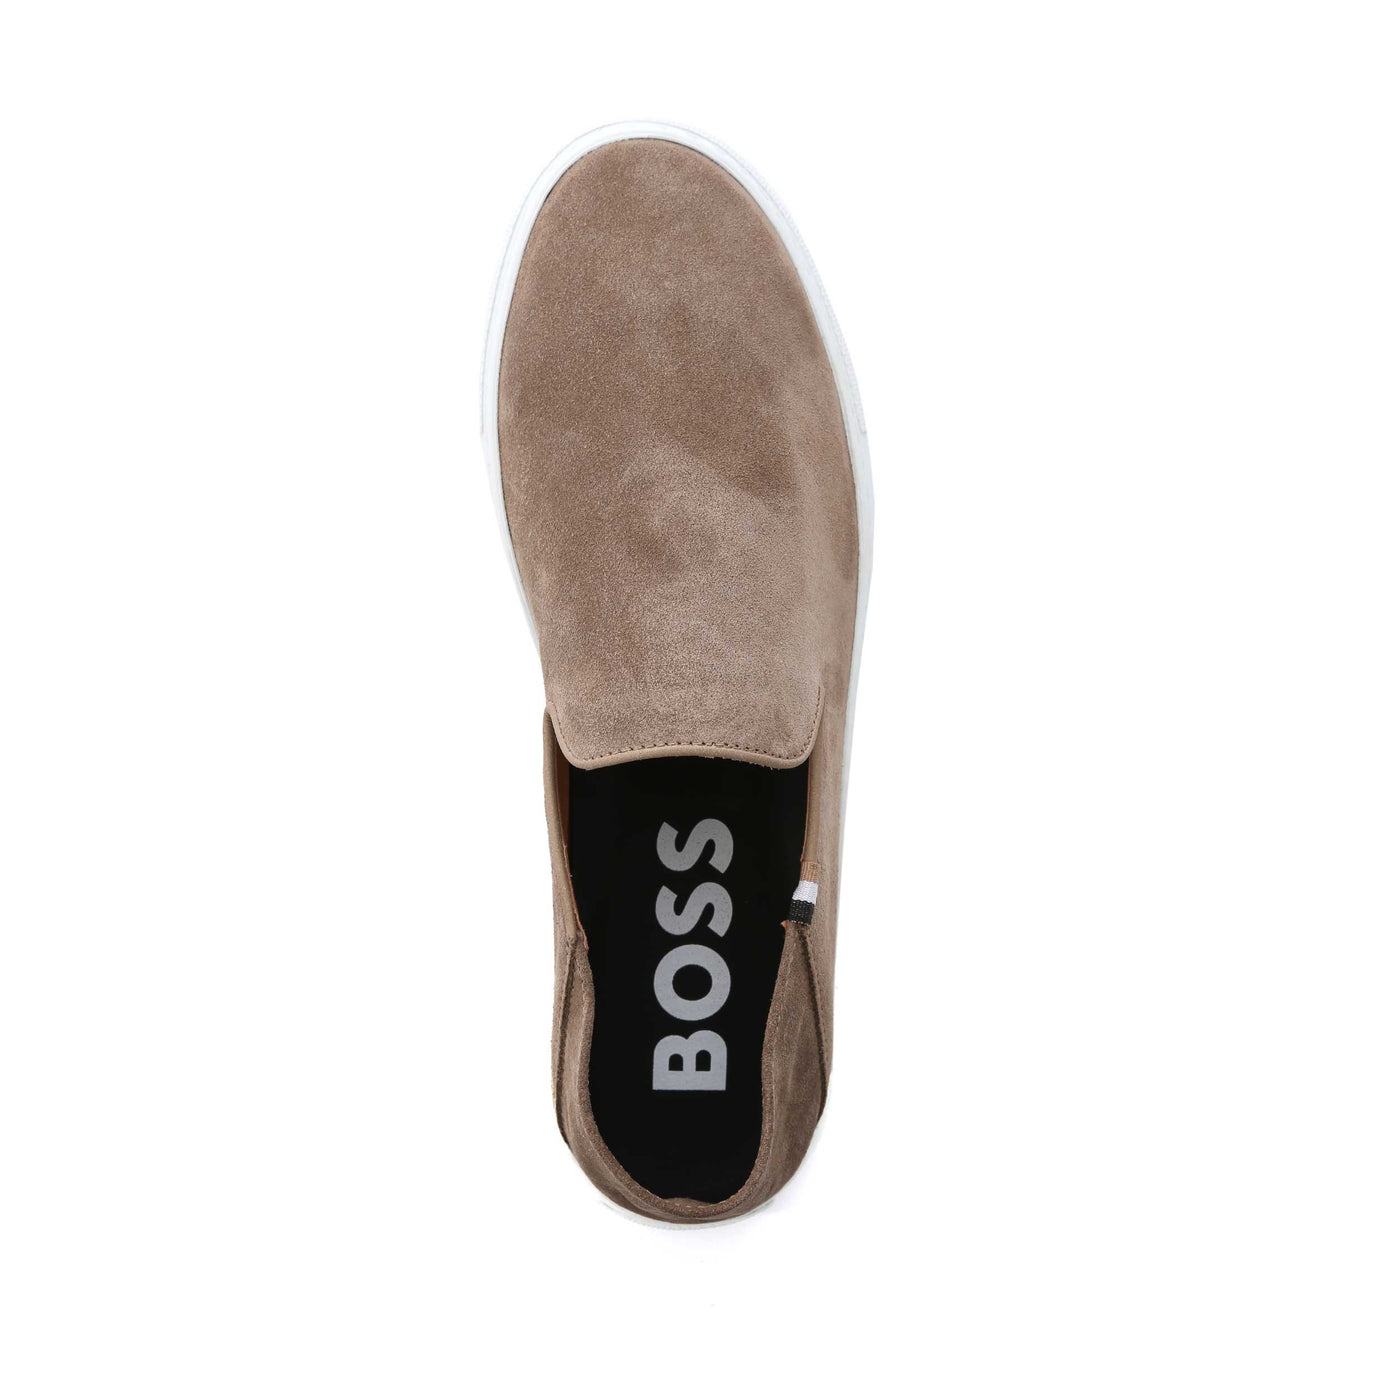 BOSS Rey Slon sd Shoe in Medium Beige Birdseye